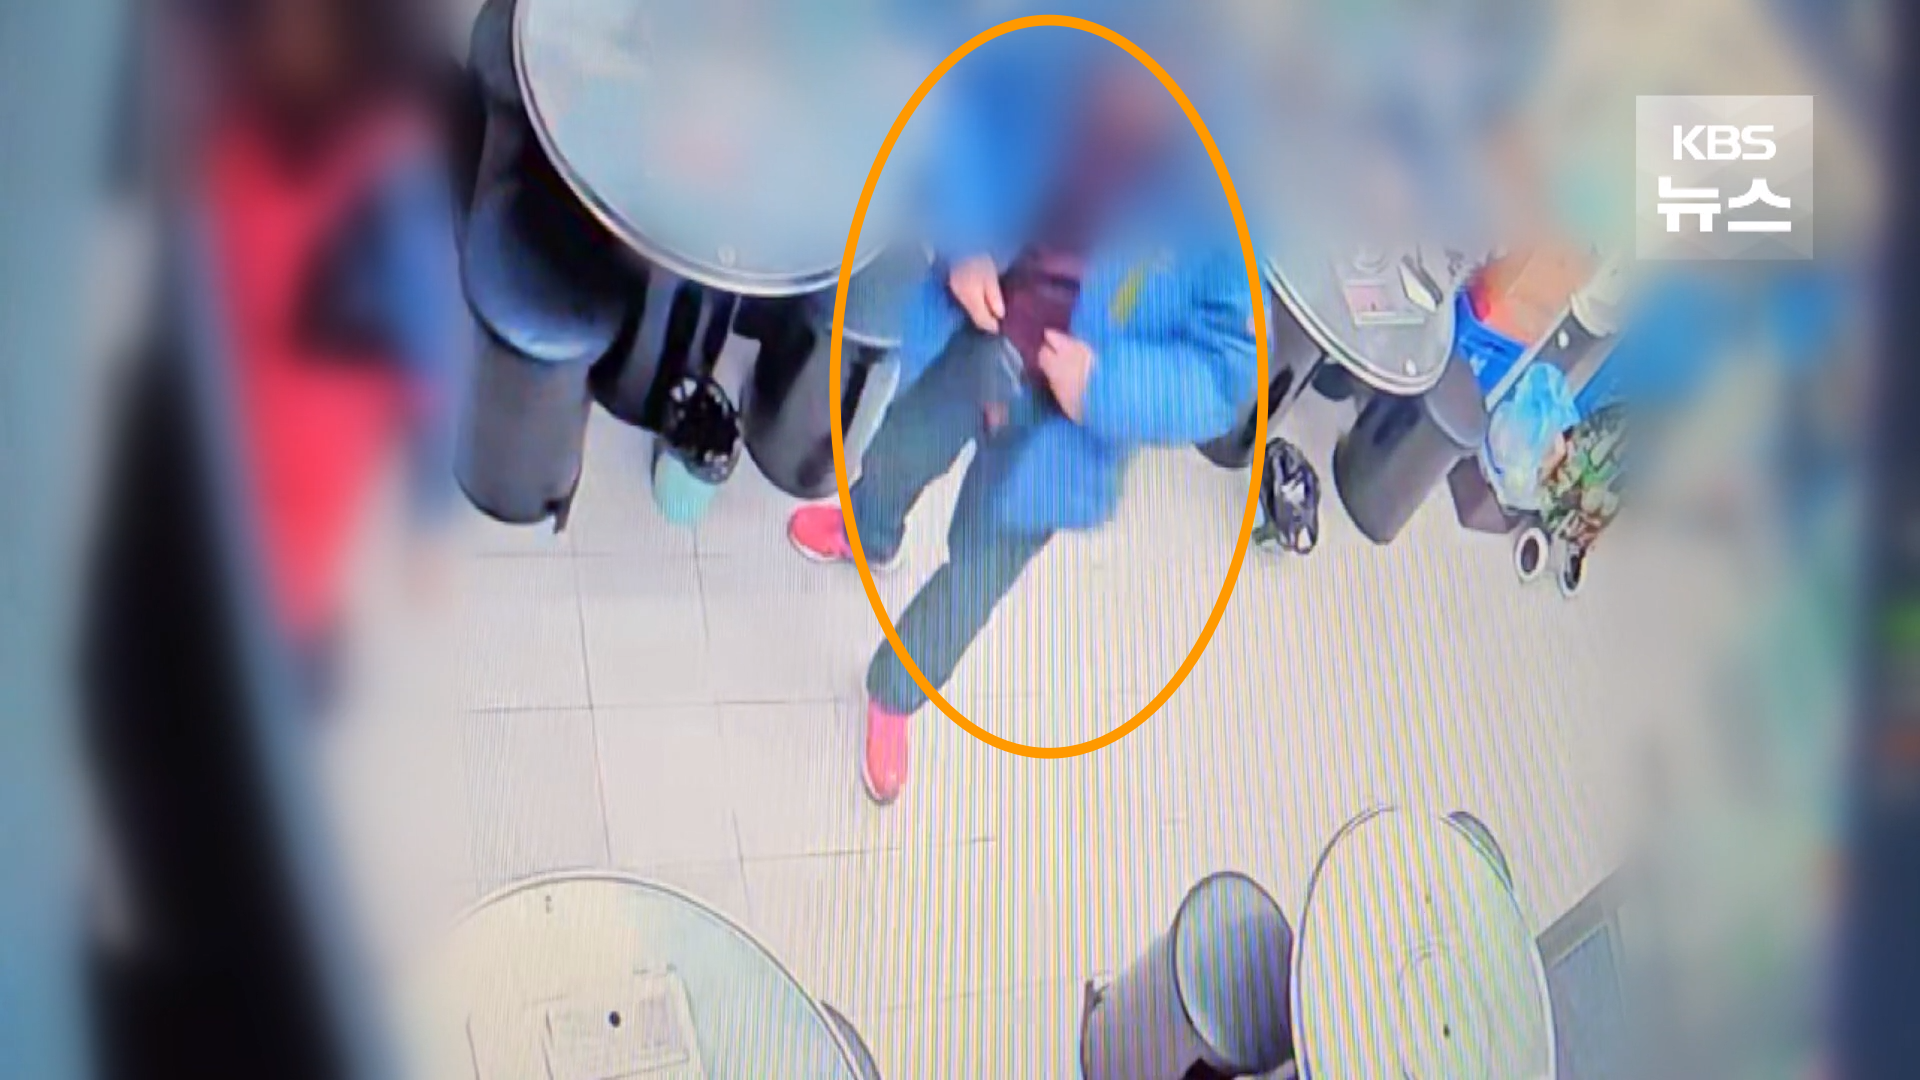 지난 2일 서울 중랑구의 한 식당 주인(여)을 추행한 혐의를 받는 남성을 경찰이 추적 중이다. 사진은 남성이 바지 지퍼를 연 채 식당 주인을 따라다니는 장면. KBS 보도화면 캡처